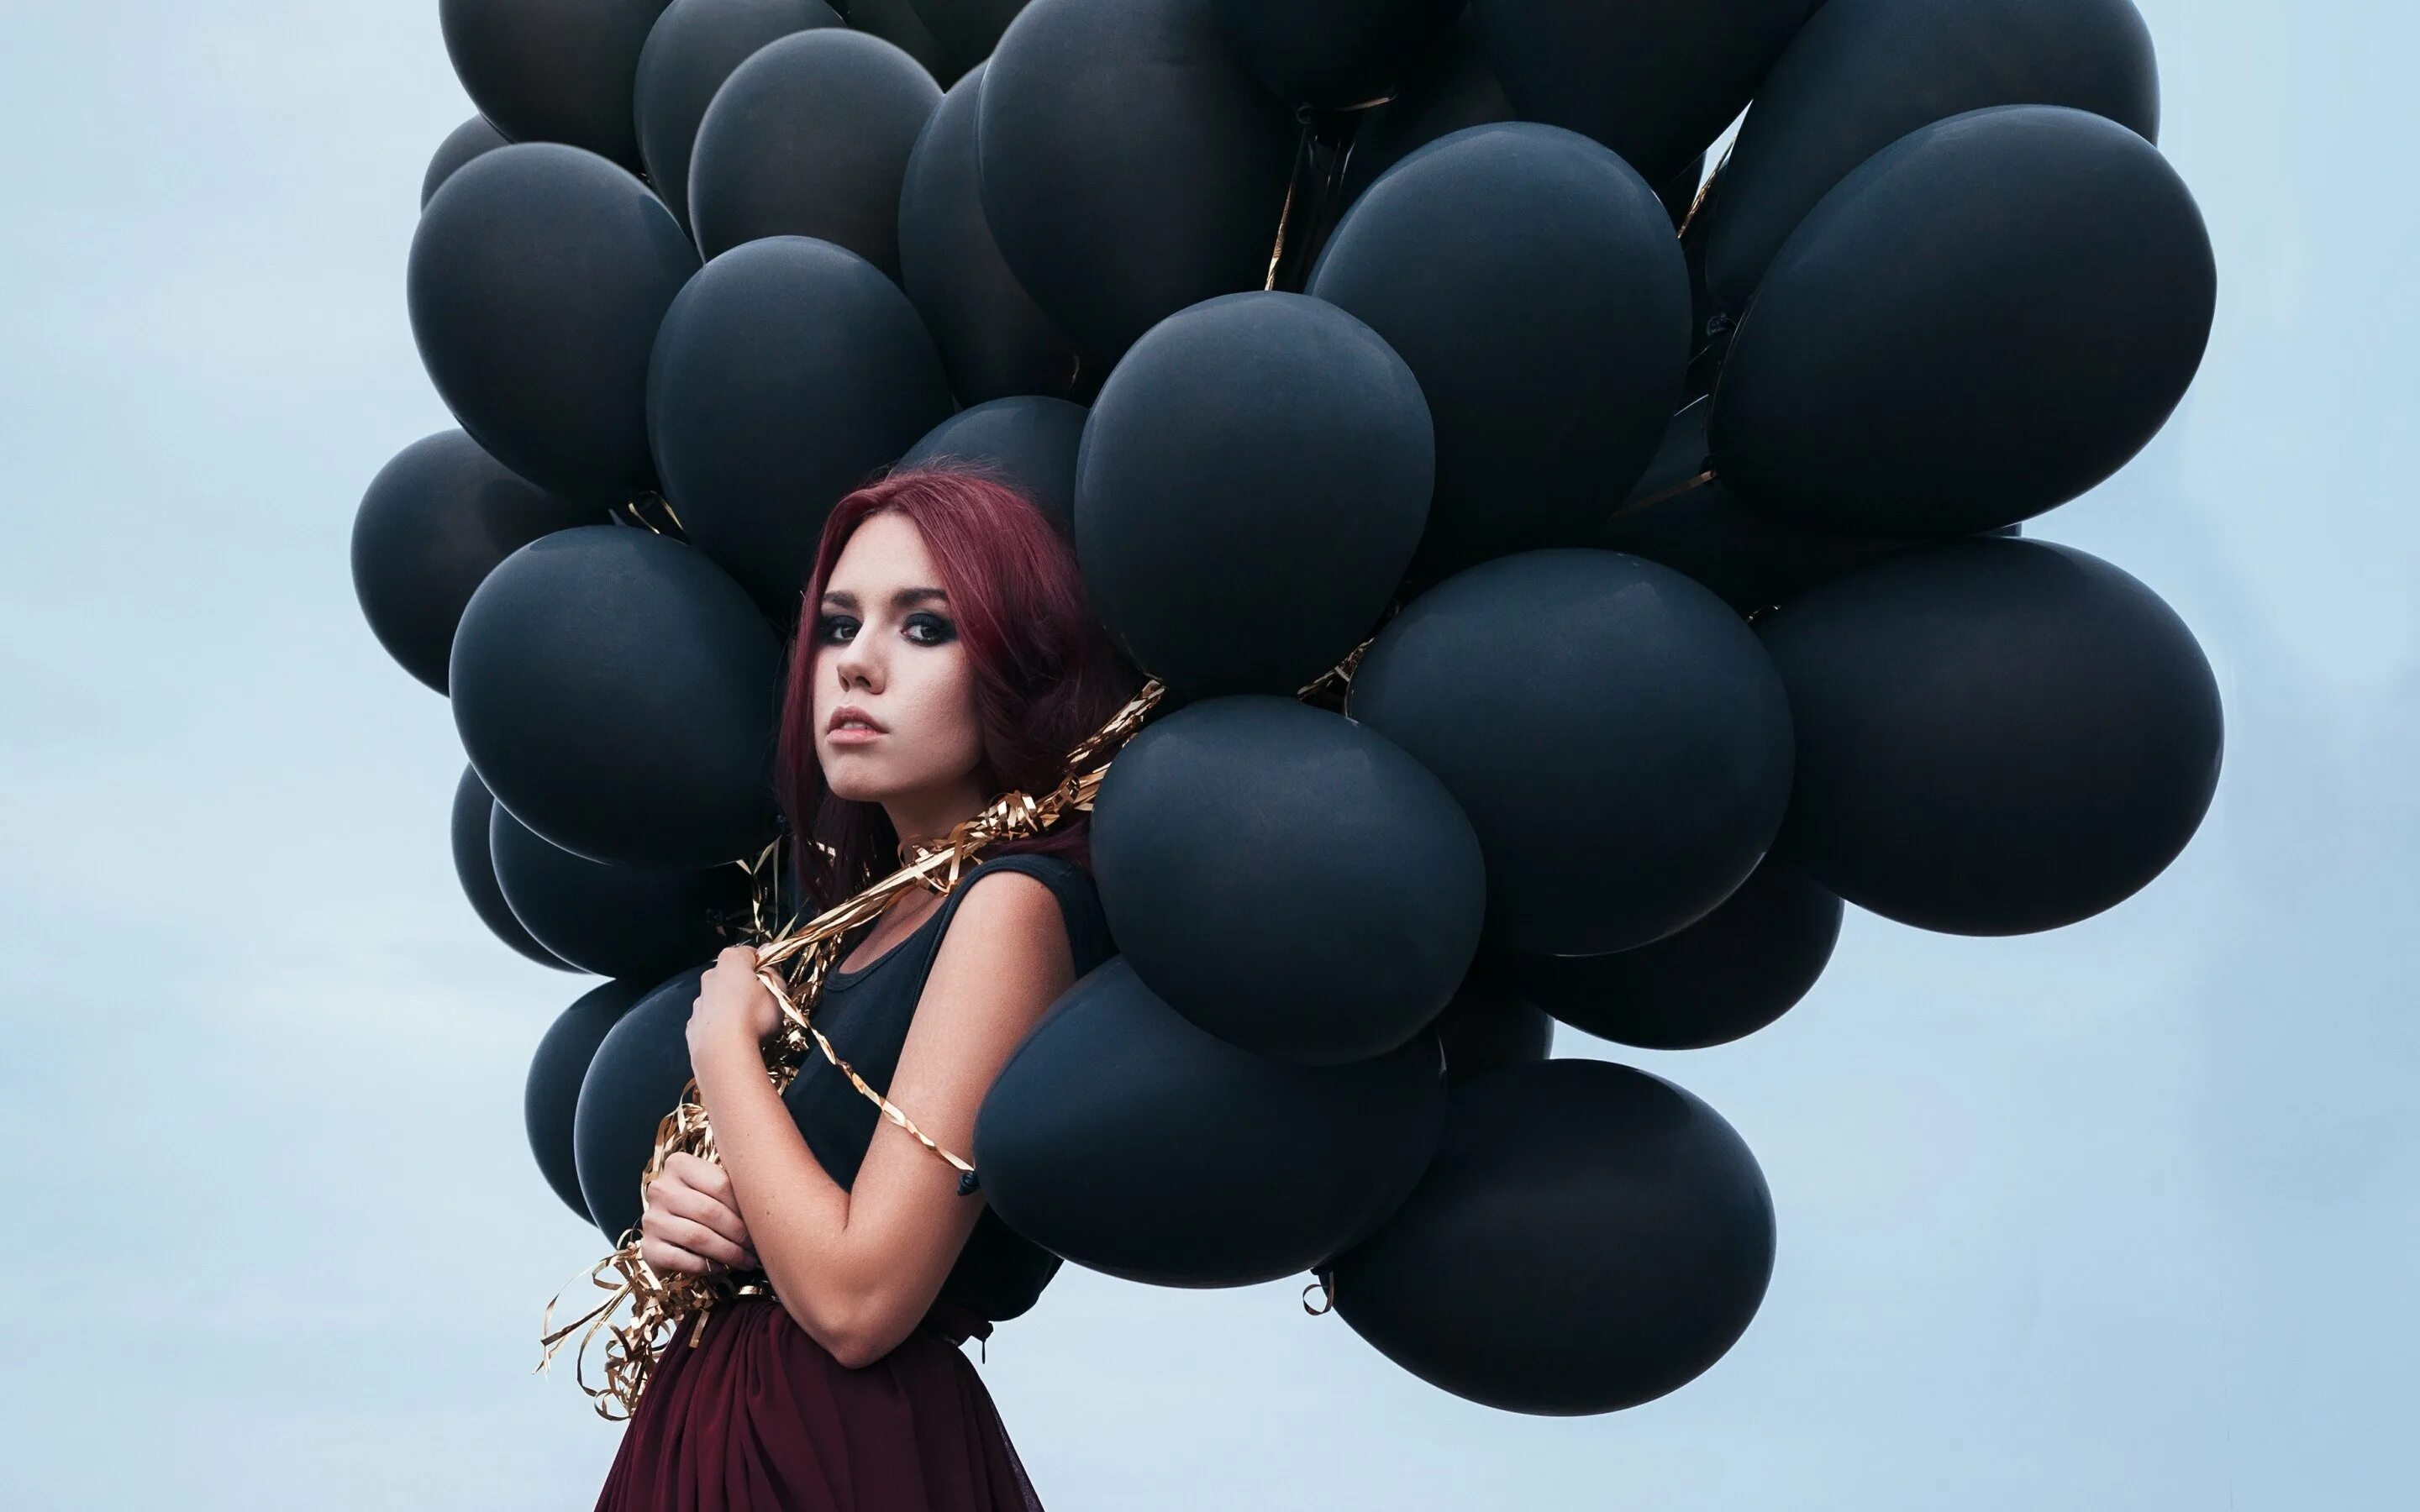 Девушки с шарами видео. Девушка с воздушными шарами. Красивые шарики для девушки. Фотосессия с воздушными шарами. Девушка с шариками воздушными.